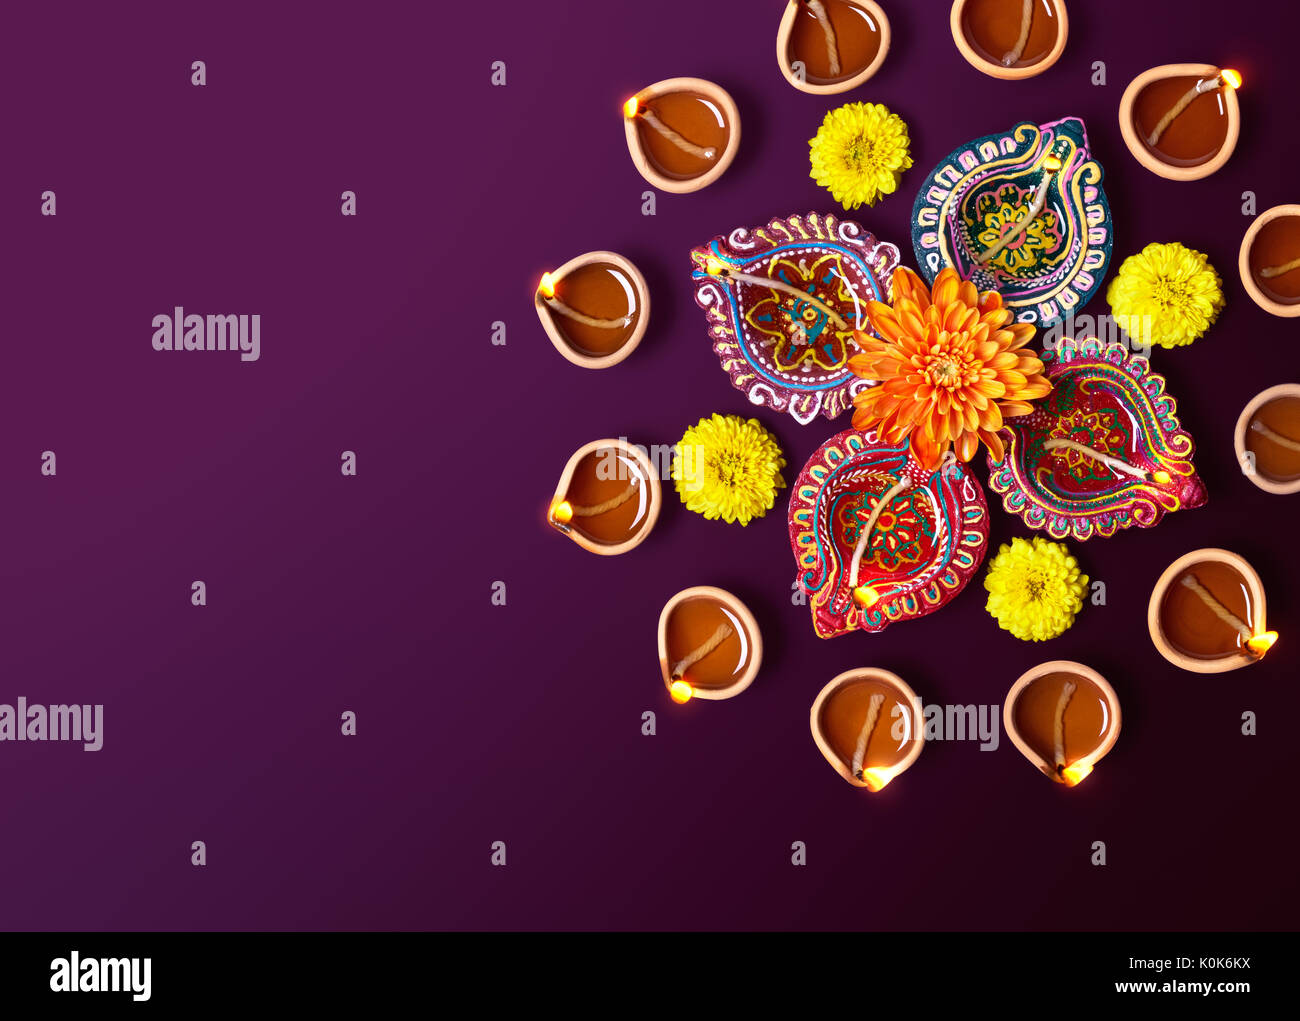 Diwali öl Lampe - Bunt Ton diya Lampen mit Blumen Stockfoto